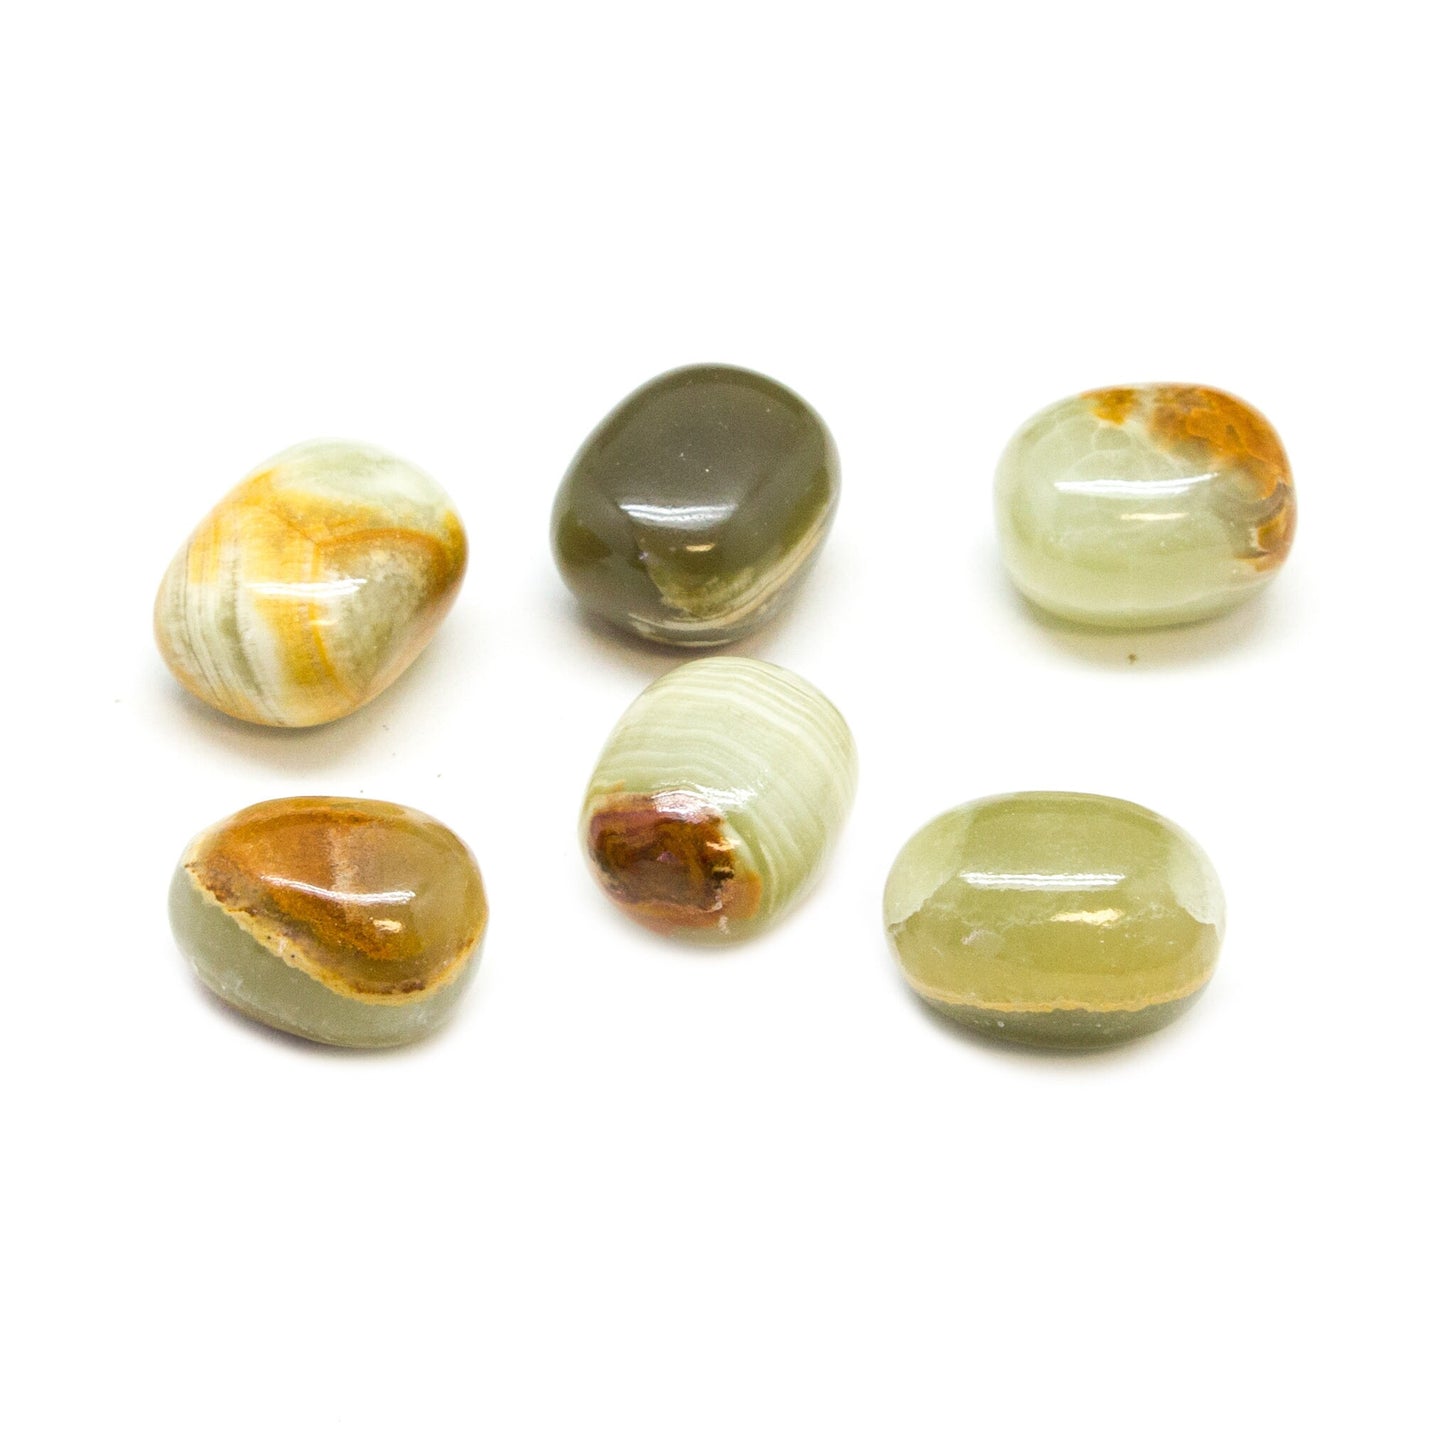 Green Onyx Tumbled Stones - Bulk Wholesale 1lb (Premium Quality Grade A Crystals)